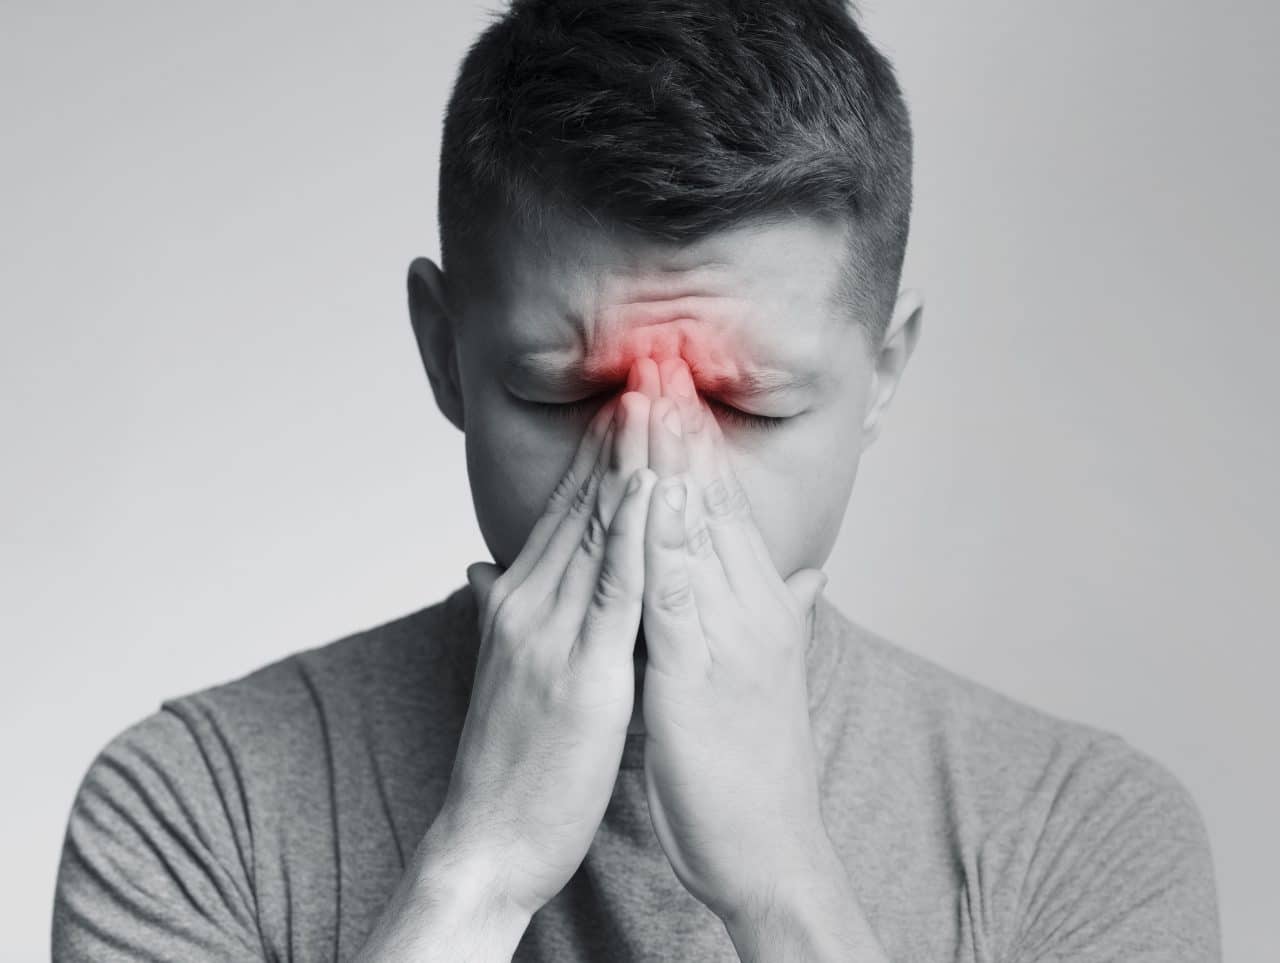 Man experiencing sinus pressure due to allergies.